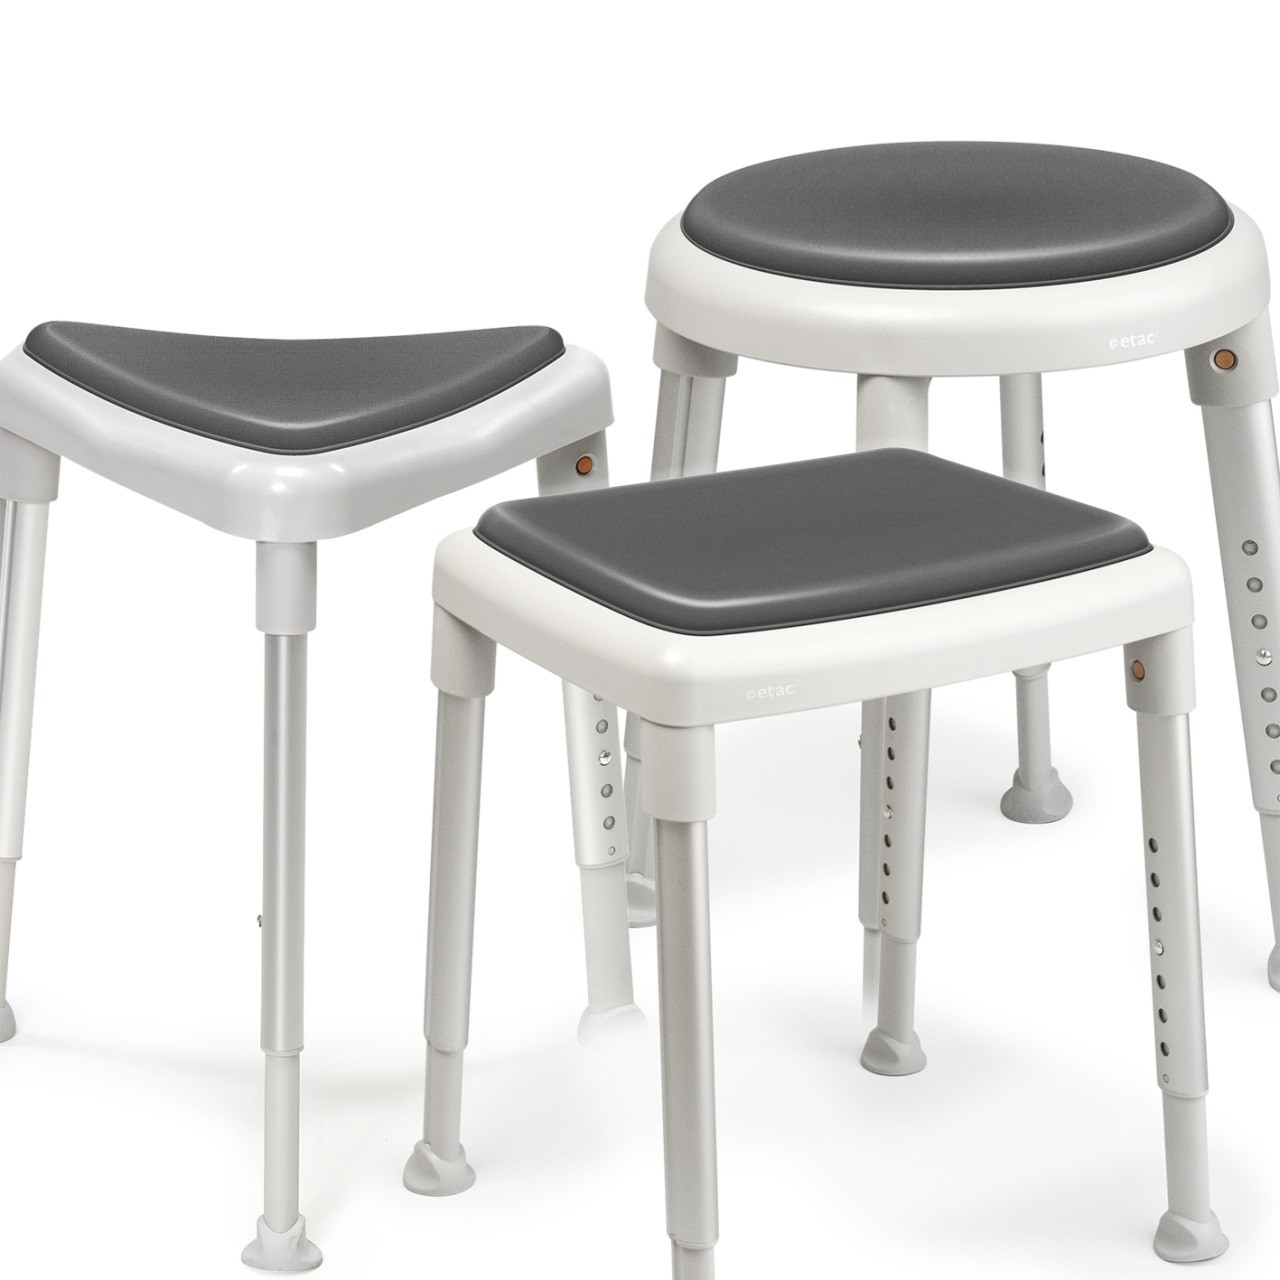 Etac Seat pad - miękka nakładka na siedzisko do stołków: Smart, Easy, Edge (antypoślizgowa) : rodzaj_nakładki_etac - Edge - narożna